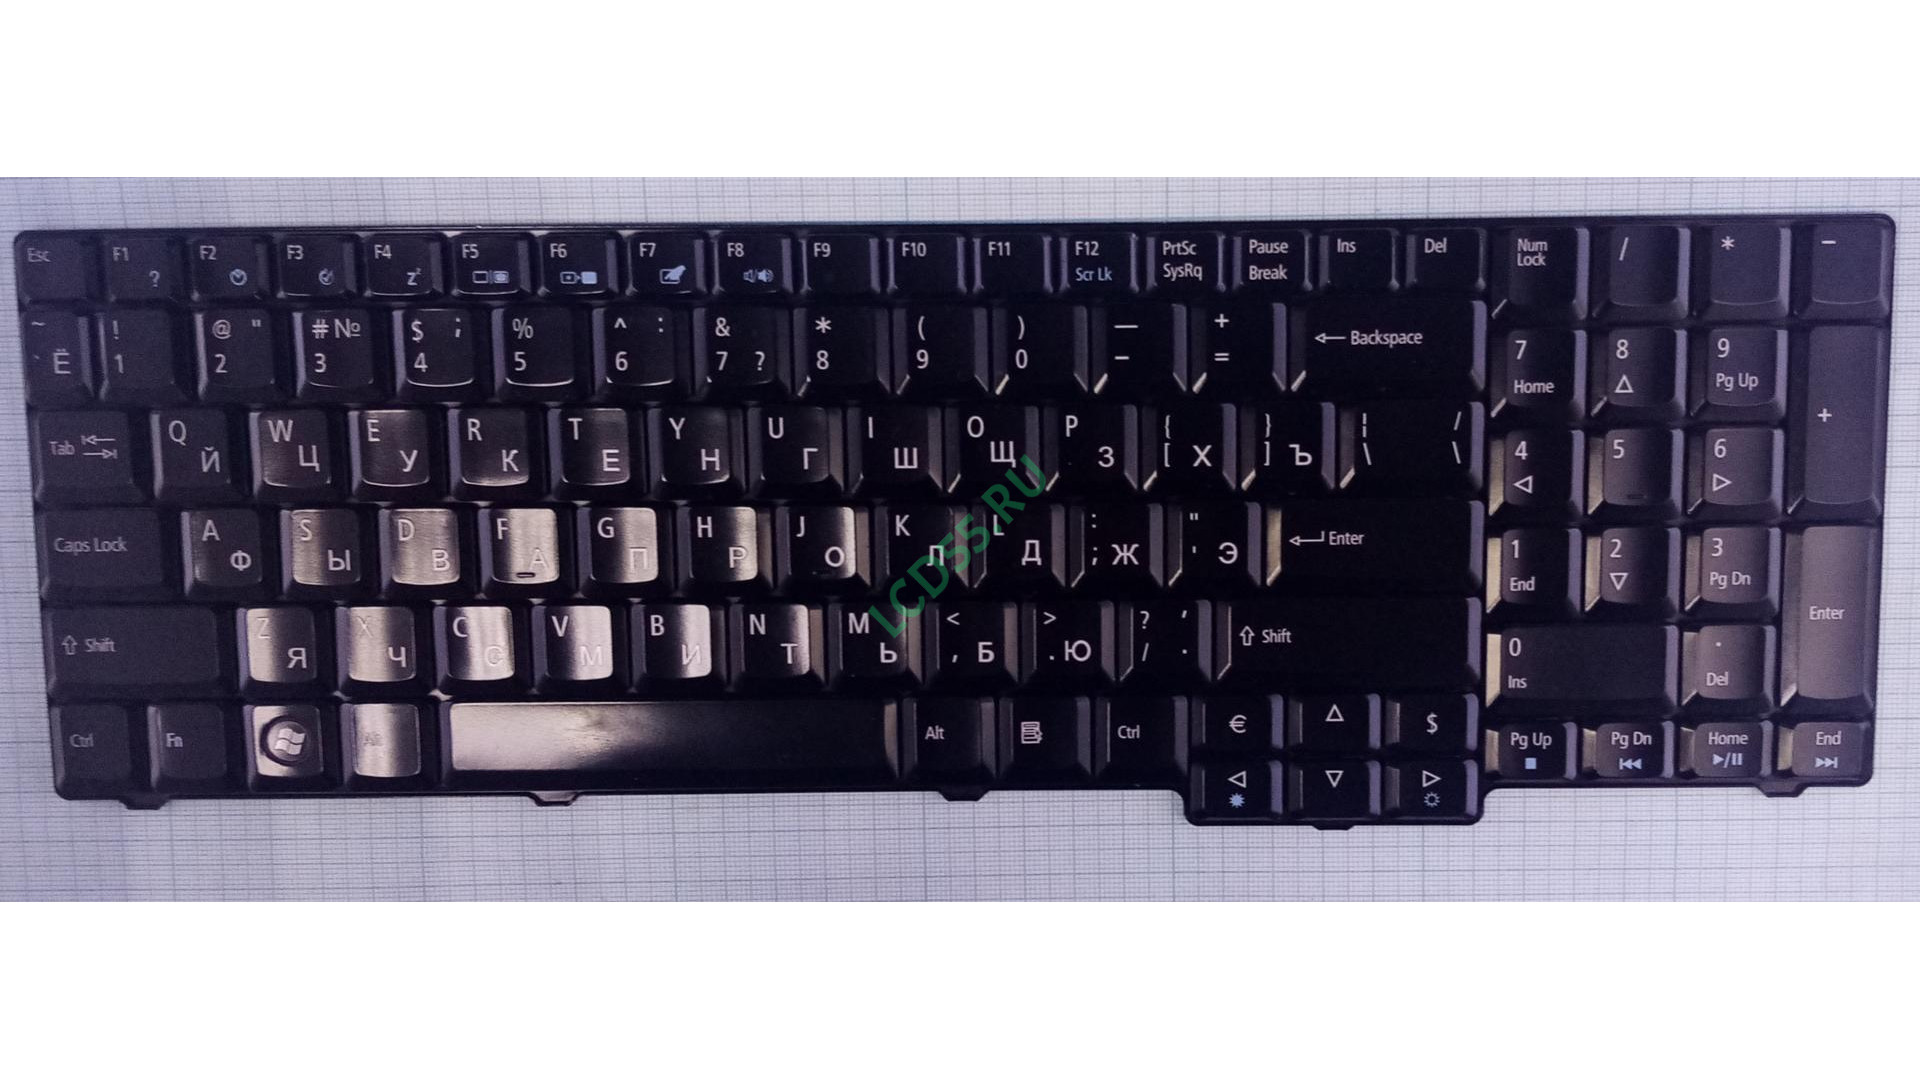 Клавиатура Acer Aspire 9300, 9400, 9500, Machines E528 (черная) с разбора